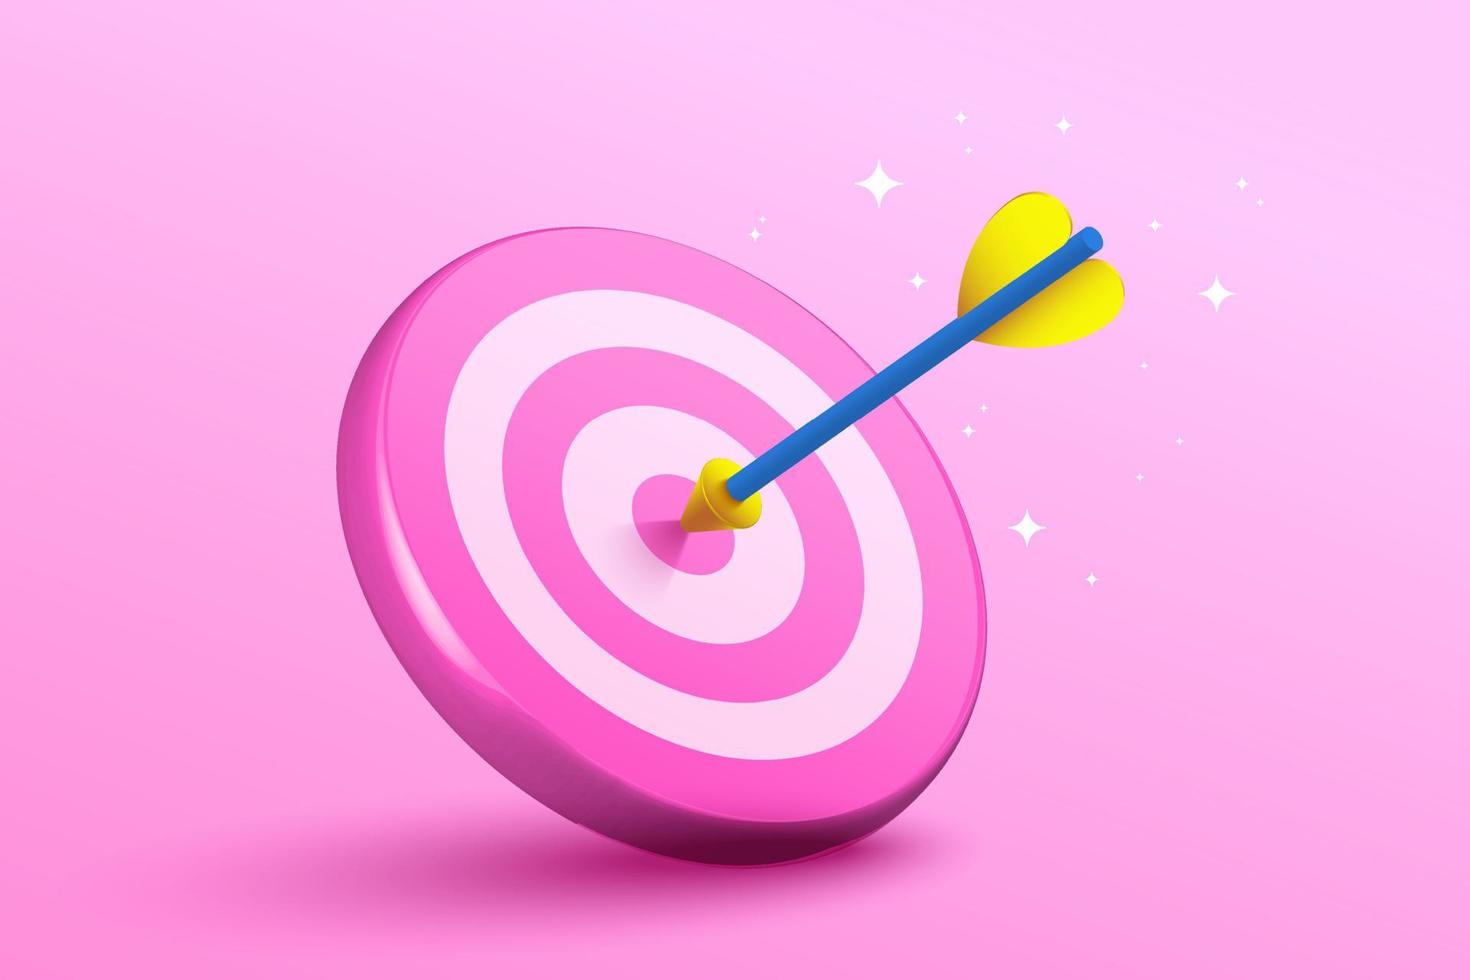 3D blå dart träff till mitten av den rosa darttavlan. pil på bullseye i målet. affärsframgång, investeringsmål, möjlighetsutmaning, målstrategi, prestationsfokuskoncept. 3D vektorillustration vektor